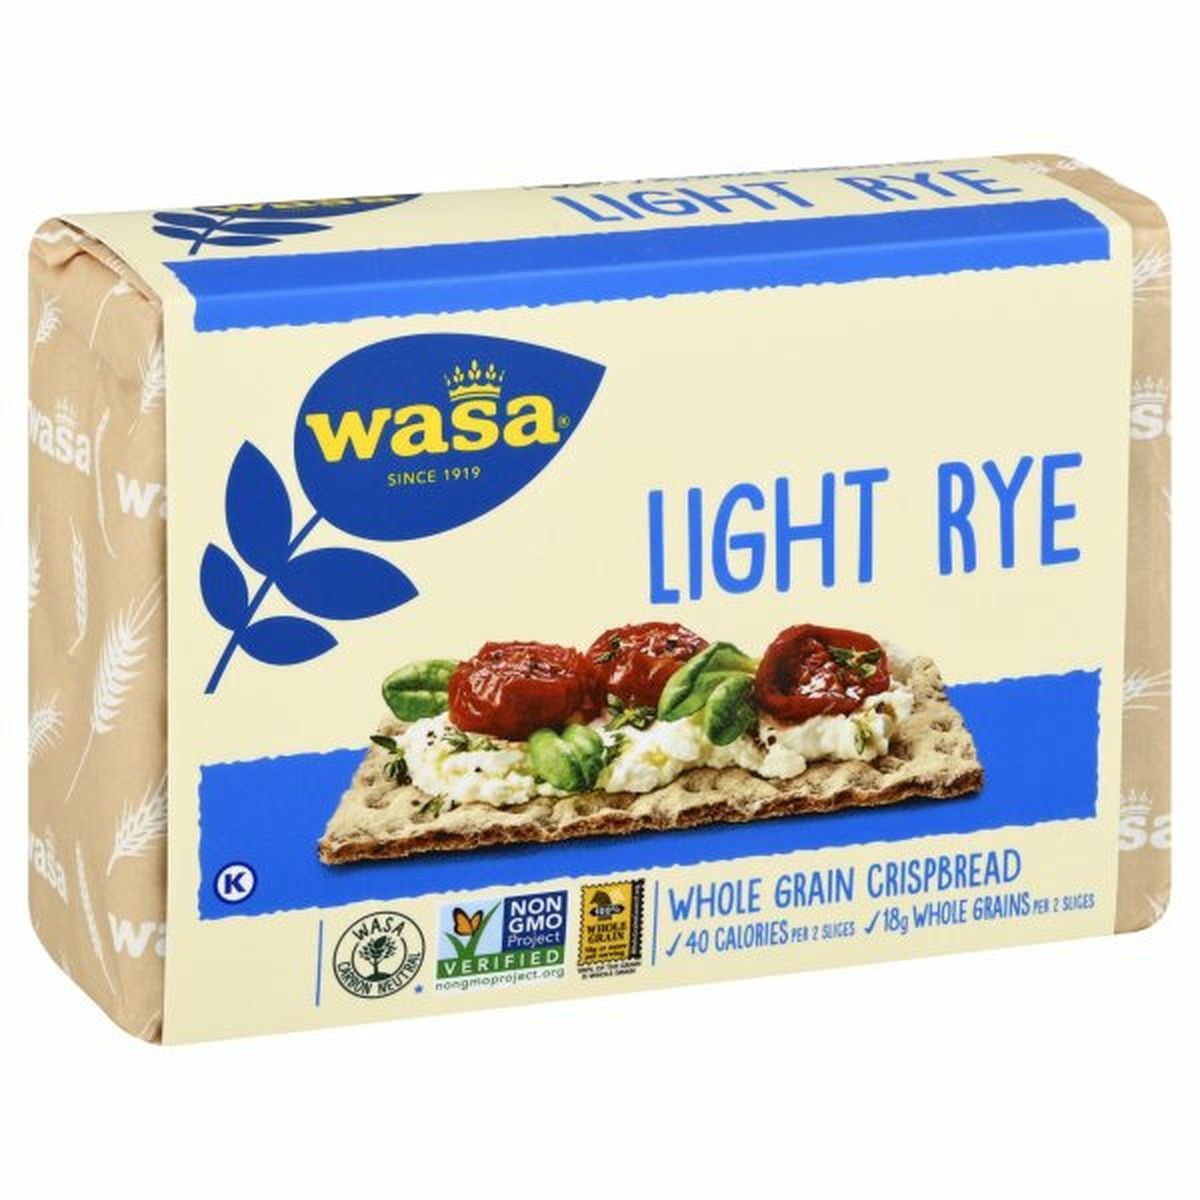 Calories in Wasa Crispbread, Whole Grain, Light Rye